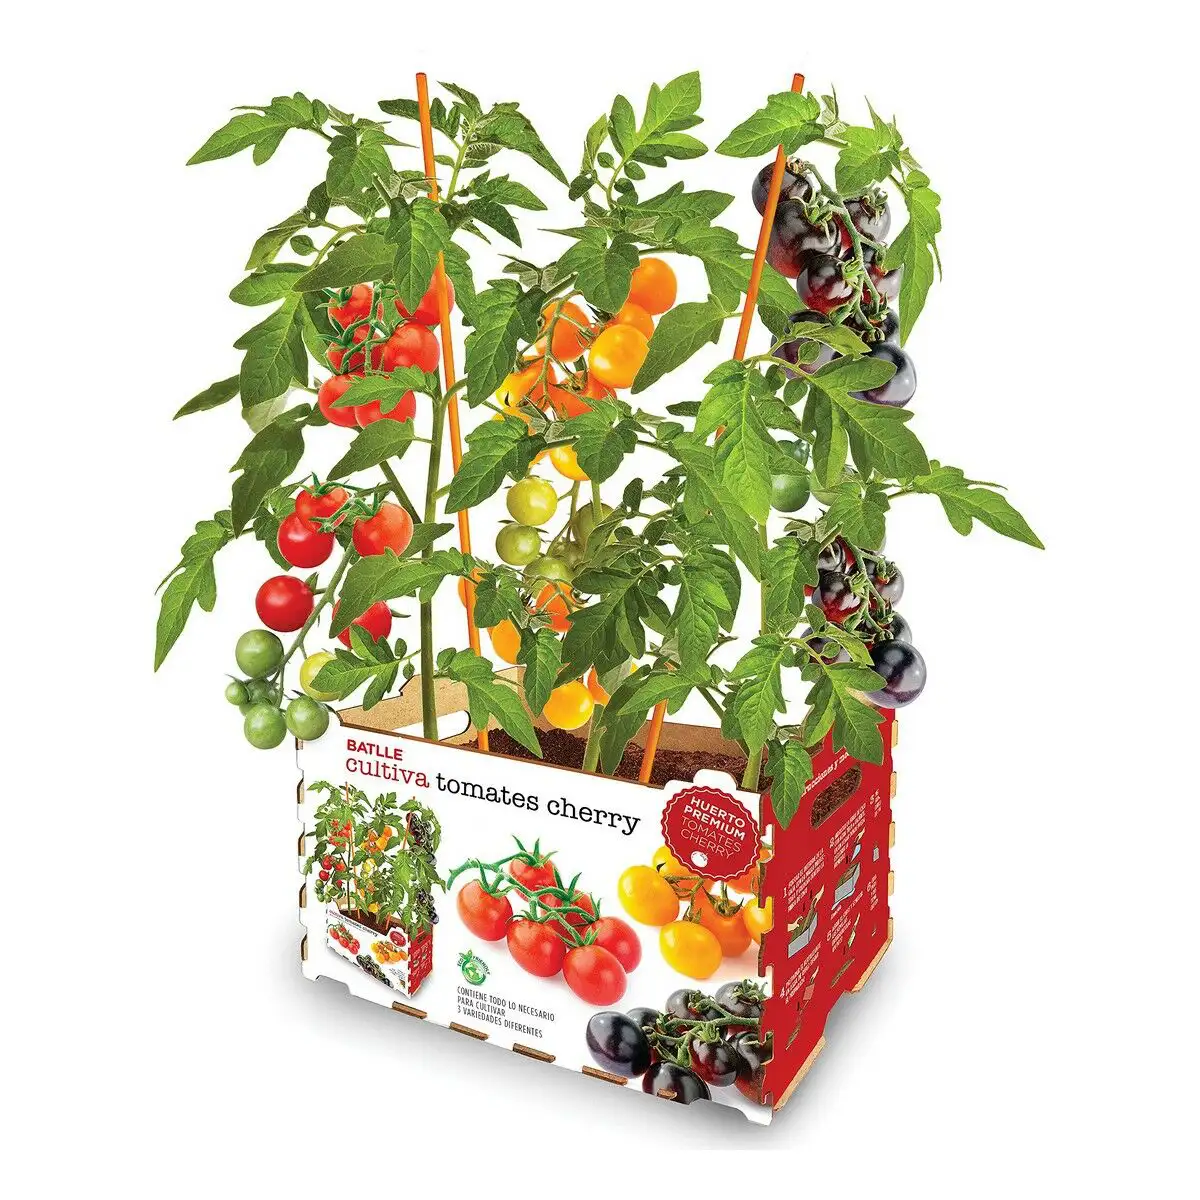 Set de culture batlle tomates naturelles 30 x 19 5 x 16 2 cm_7114. DIAYTAR SENEGAL - Là où Chaque Produit Est une Trouvaille. Parcourez notre catalogue diversifié et découvrez des articles qui enrichiront votre quotidien, du pratique à l'insolite.